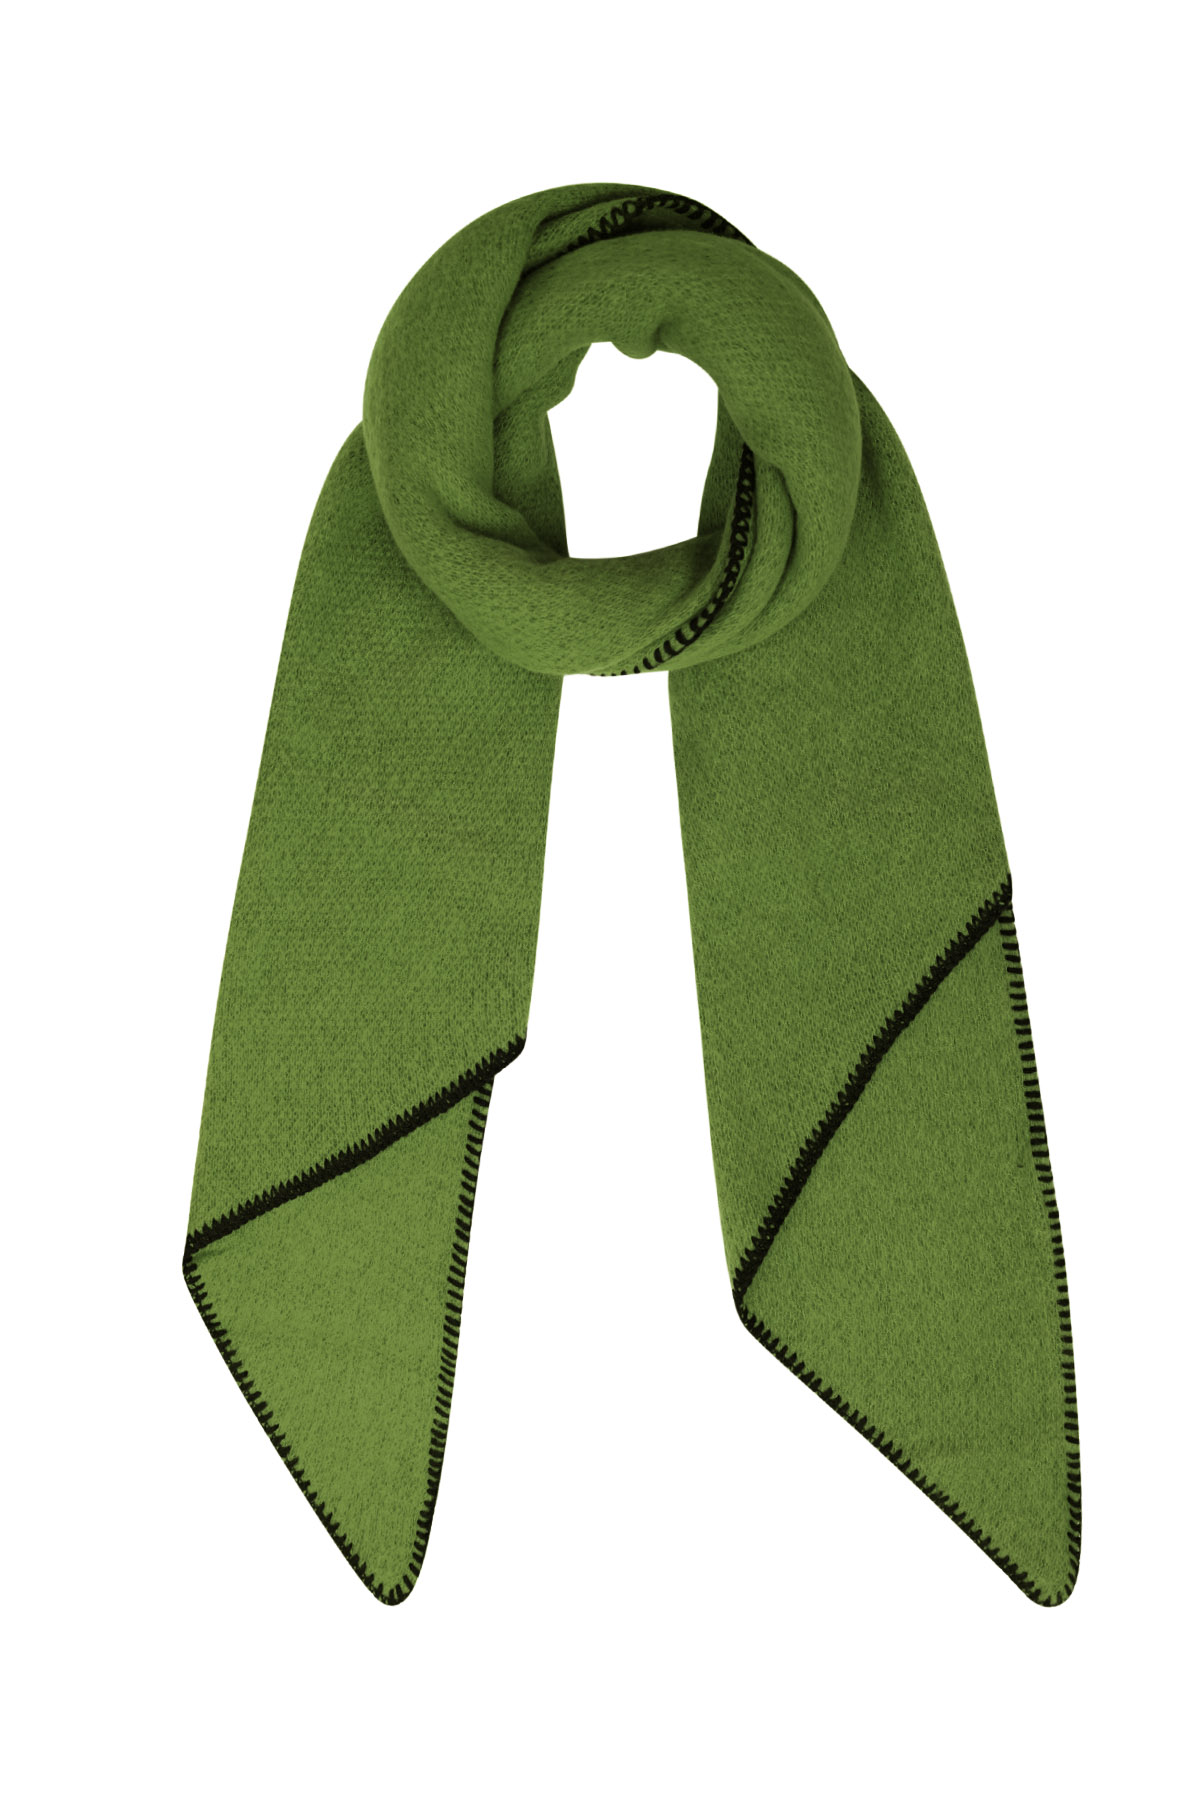 Sciarpa invernale tinta unita con cuciture nere - verdi h5 